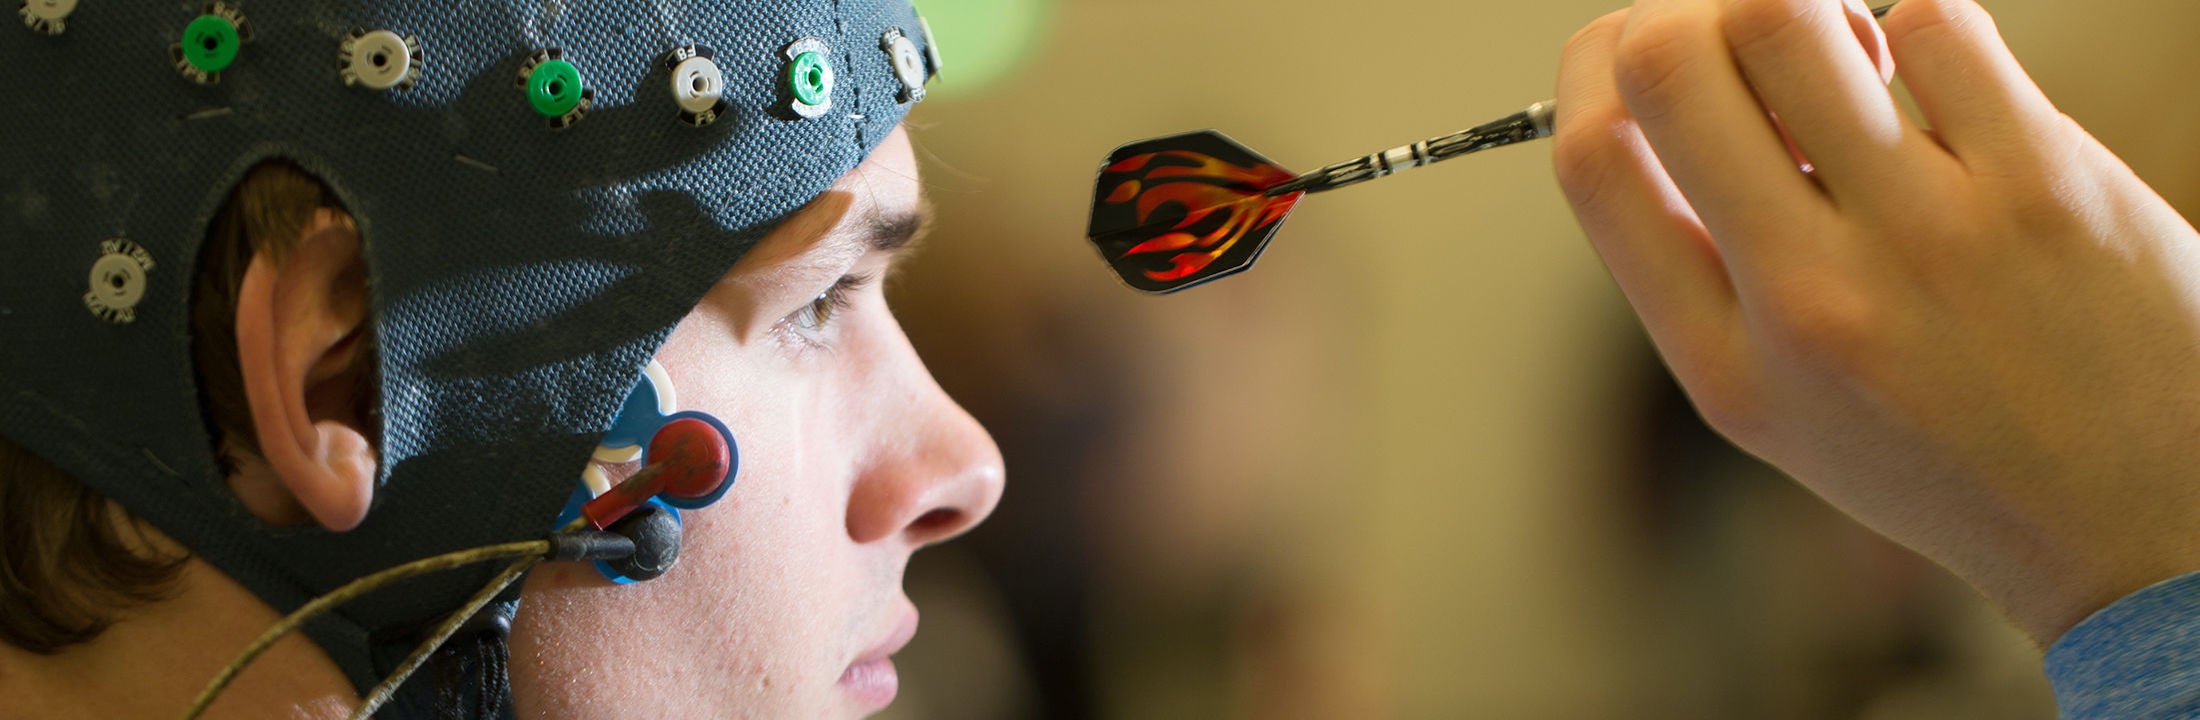 Een jongen met een muts met elektroden op zijn hoofd is aan het darten